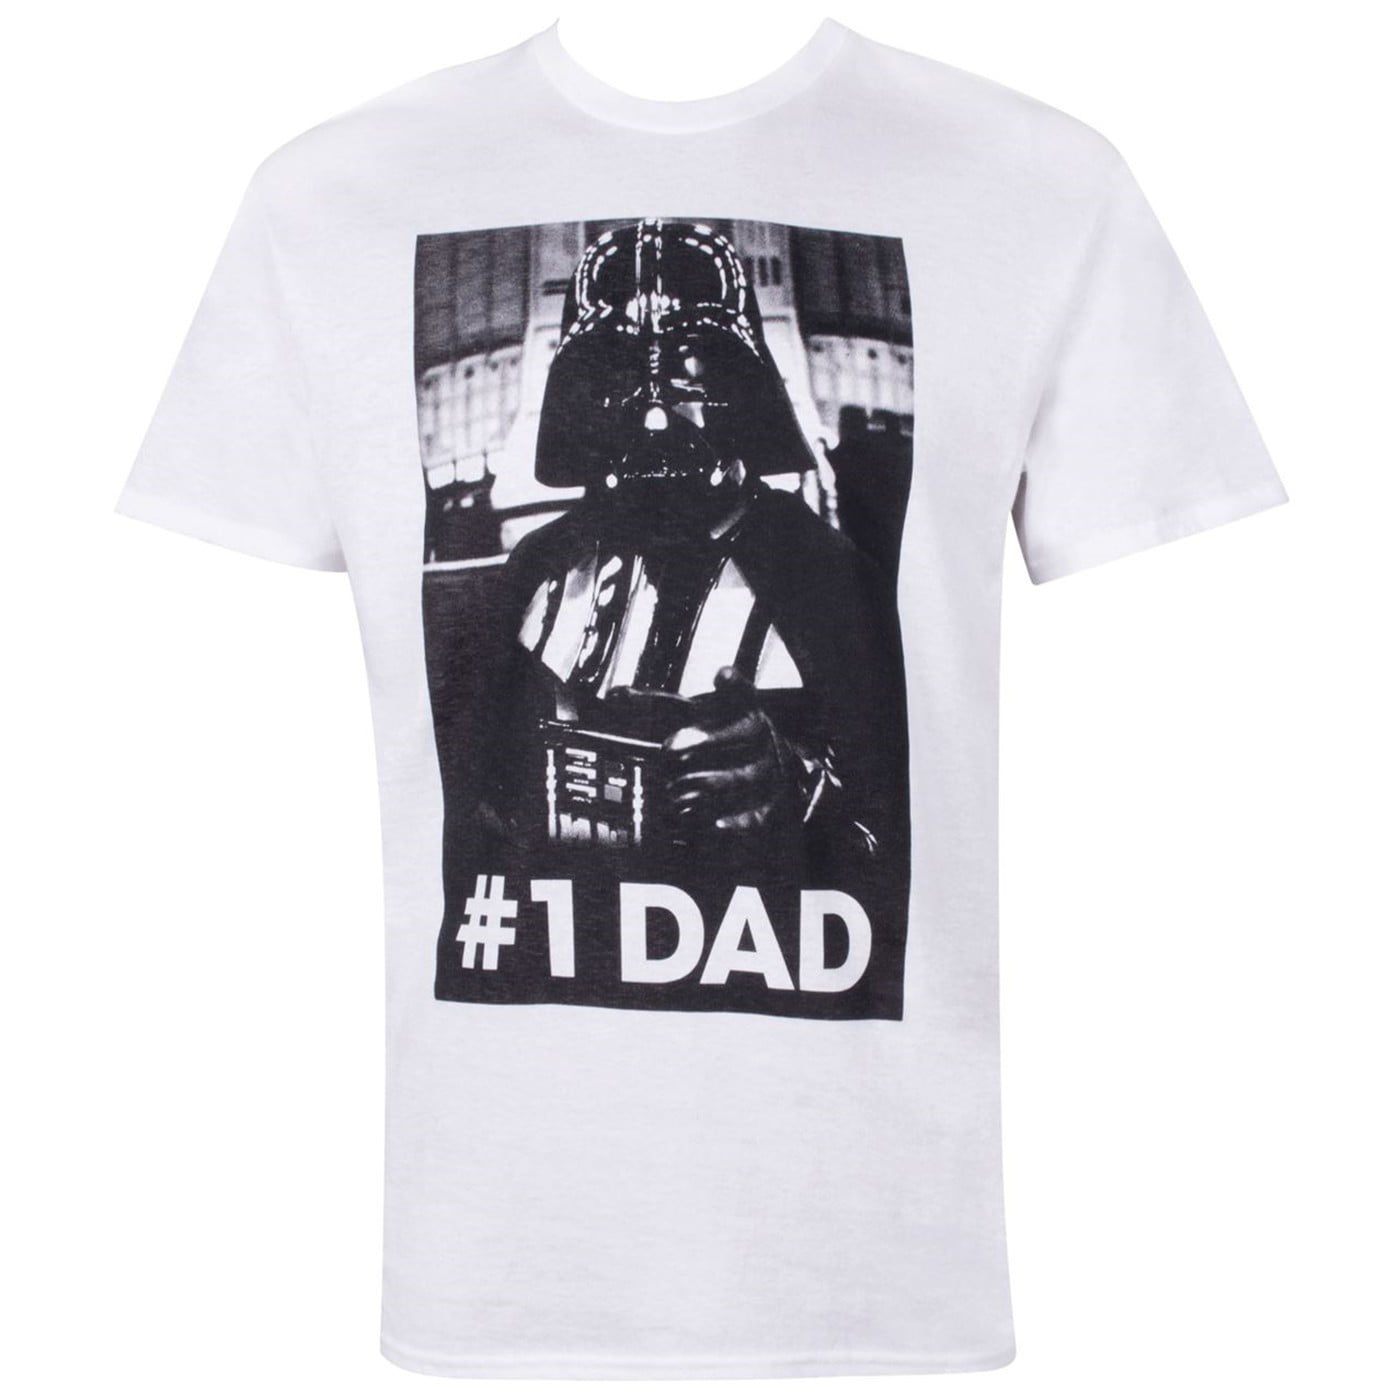 STAR WARS Best Dad Darth Vader Boy Licensed tee t shirt top NEW sizes 5-7 